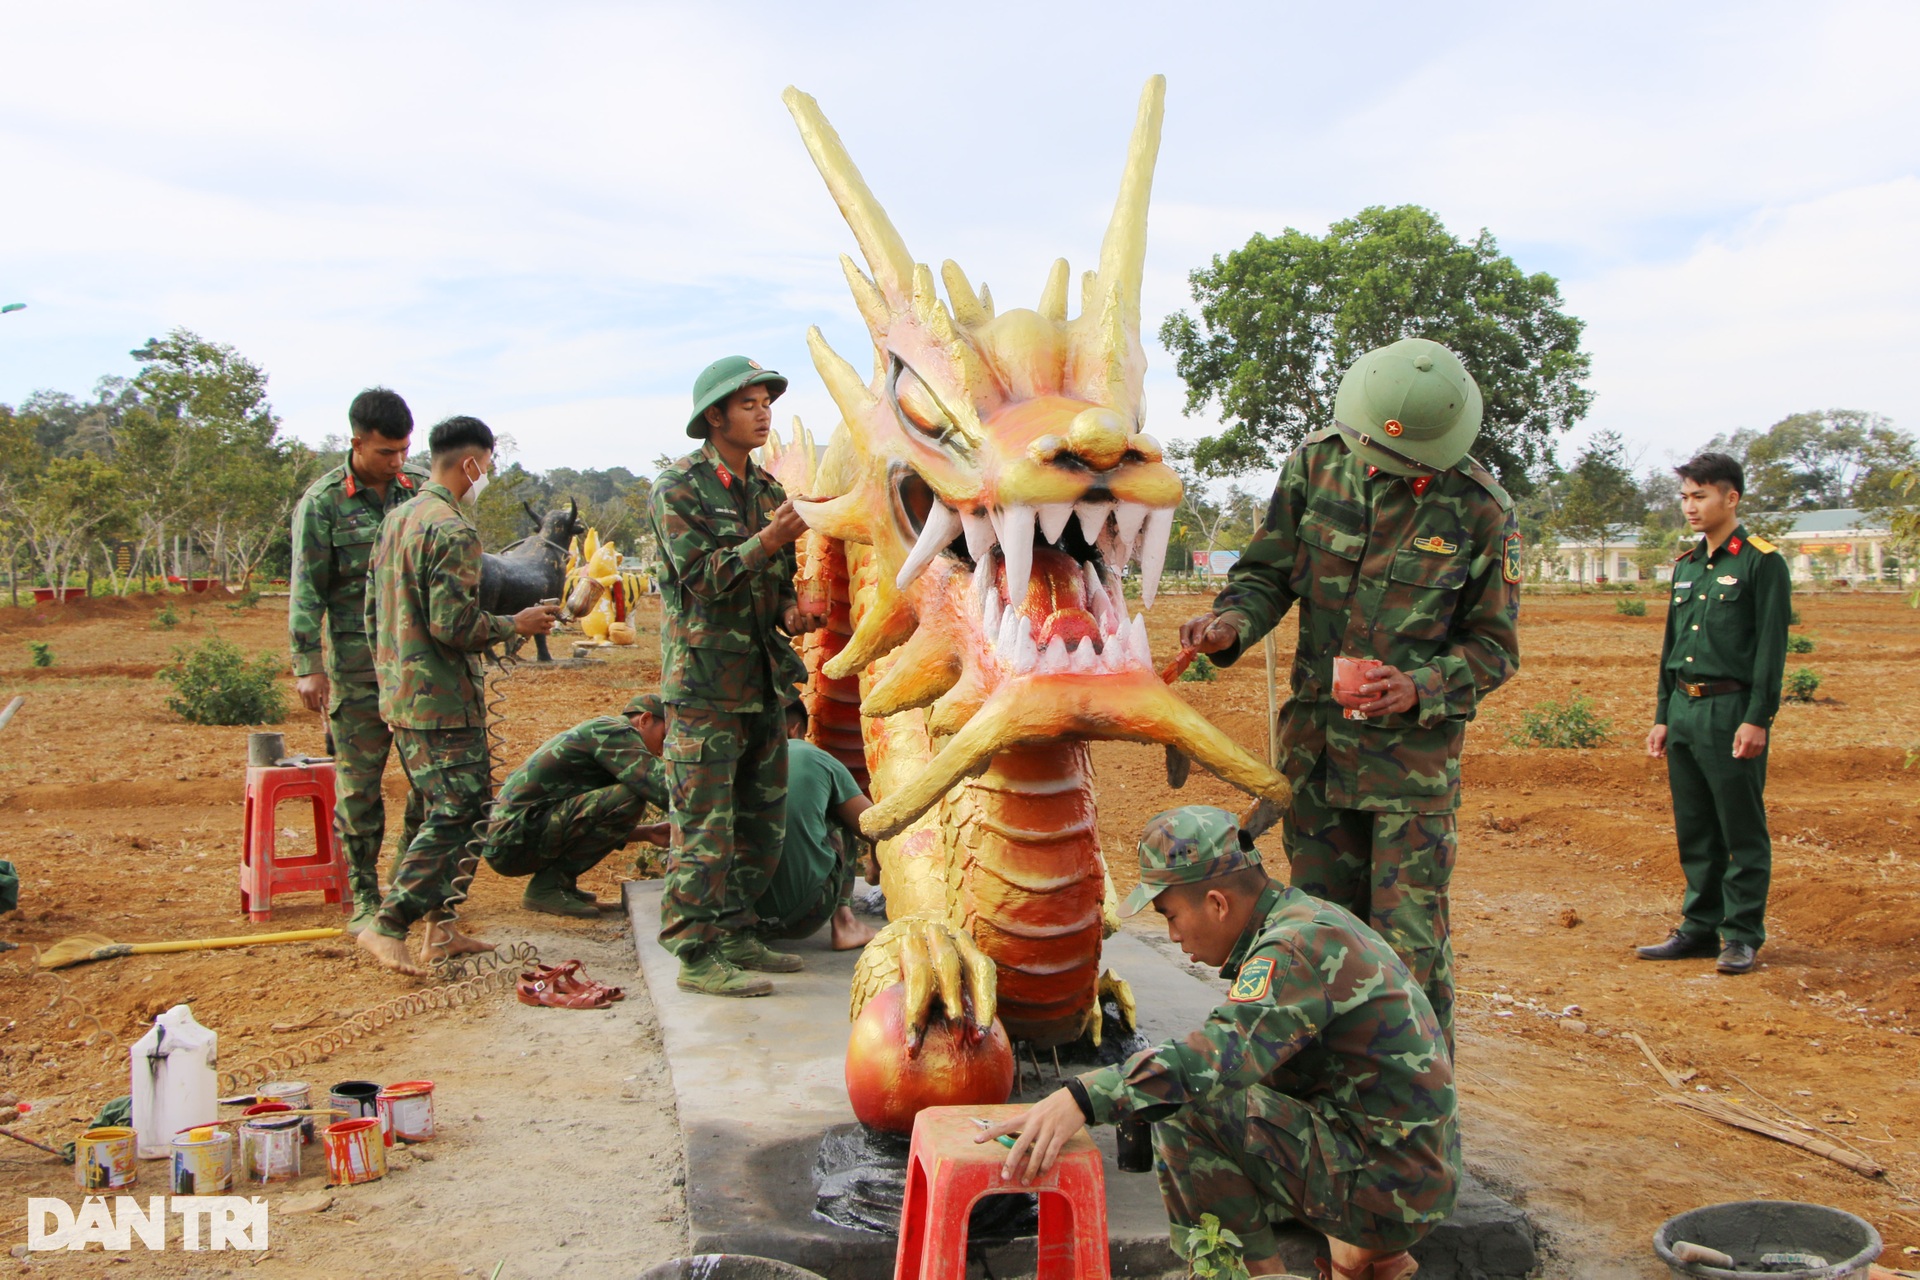 Linh vật rồng gây sốt mạng xã hội ở Đắk Nông - 1